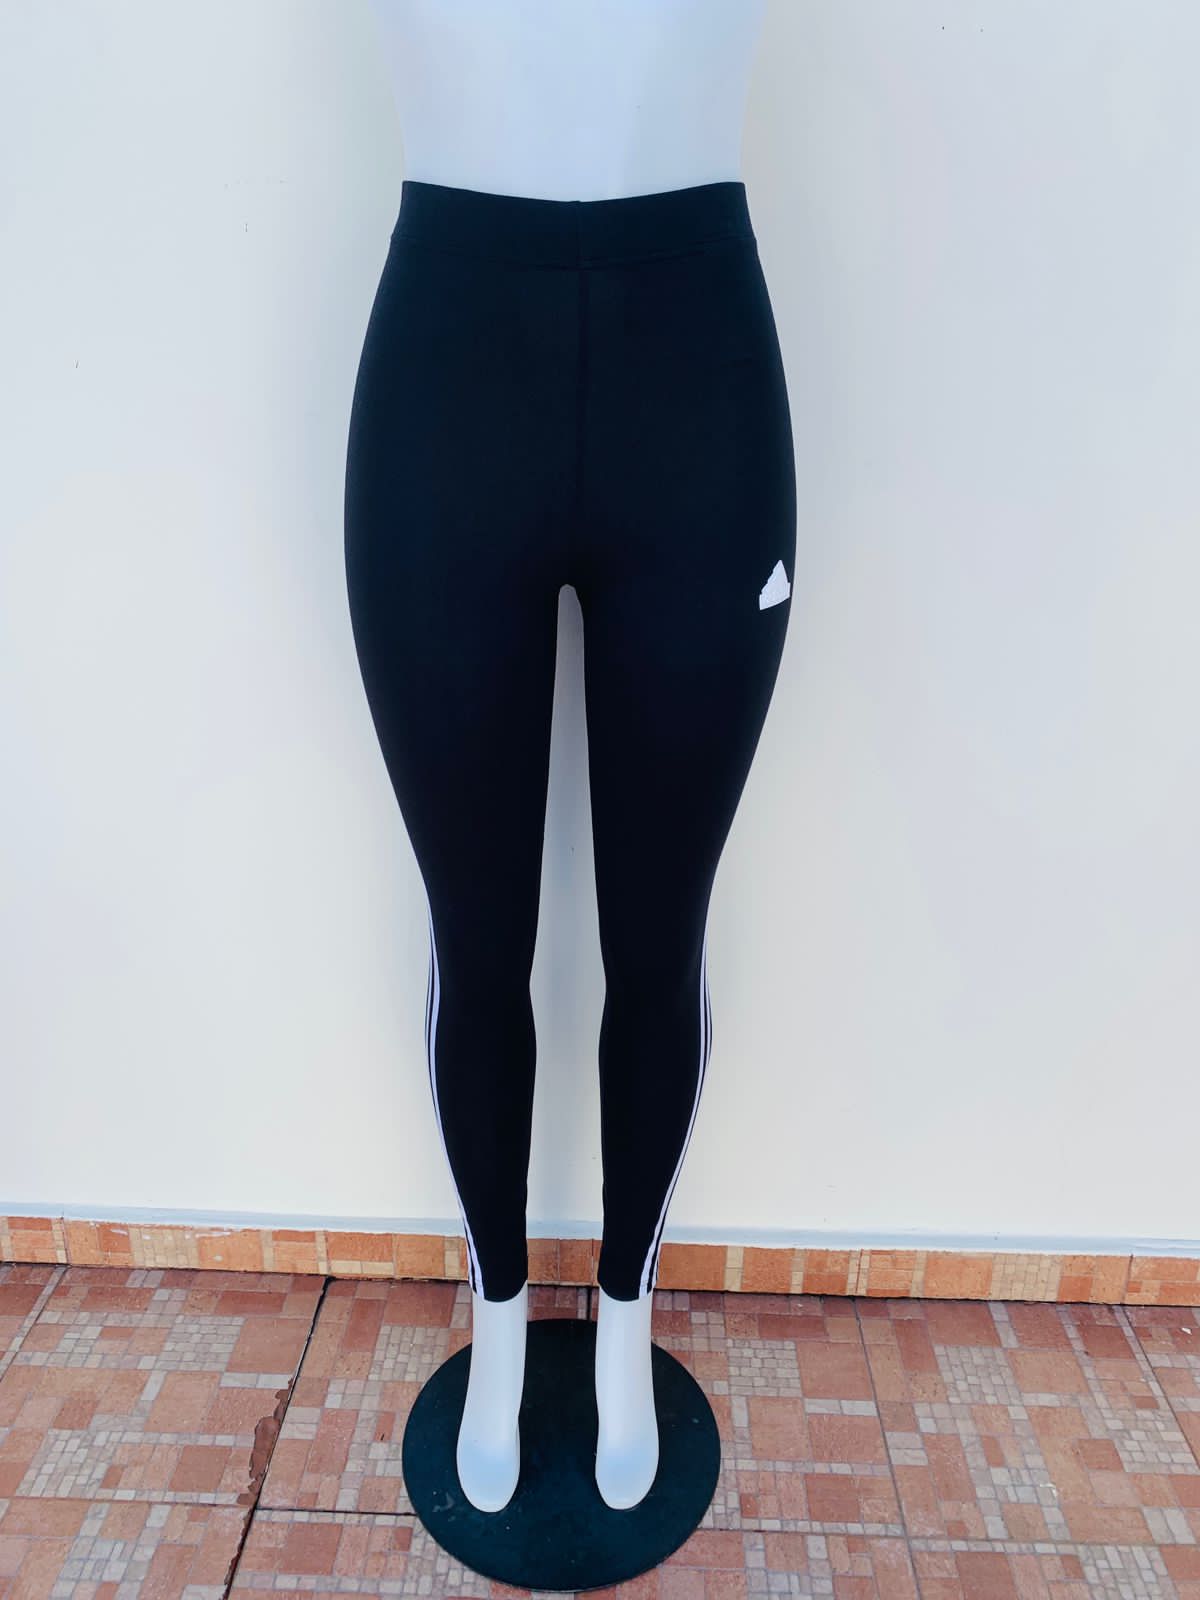 Legging/ Licra Adidas original negra con rayas blancas en ambos lados – Store